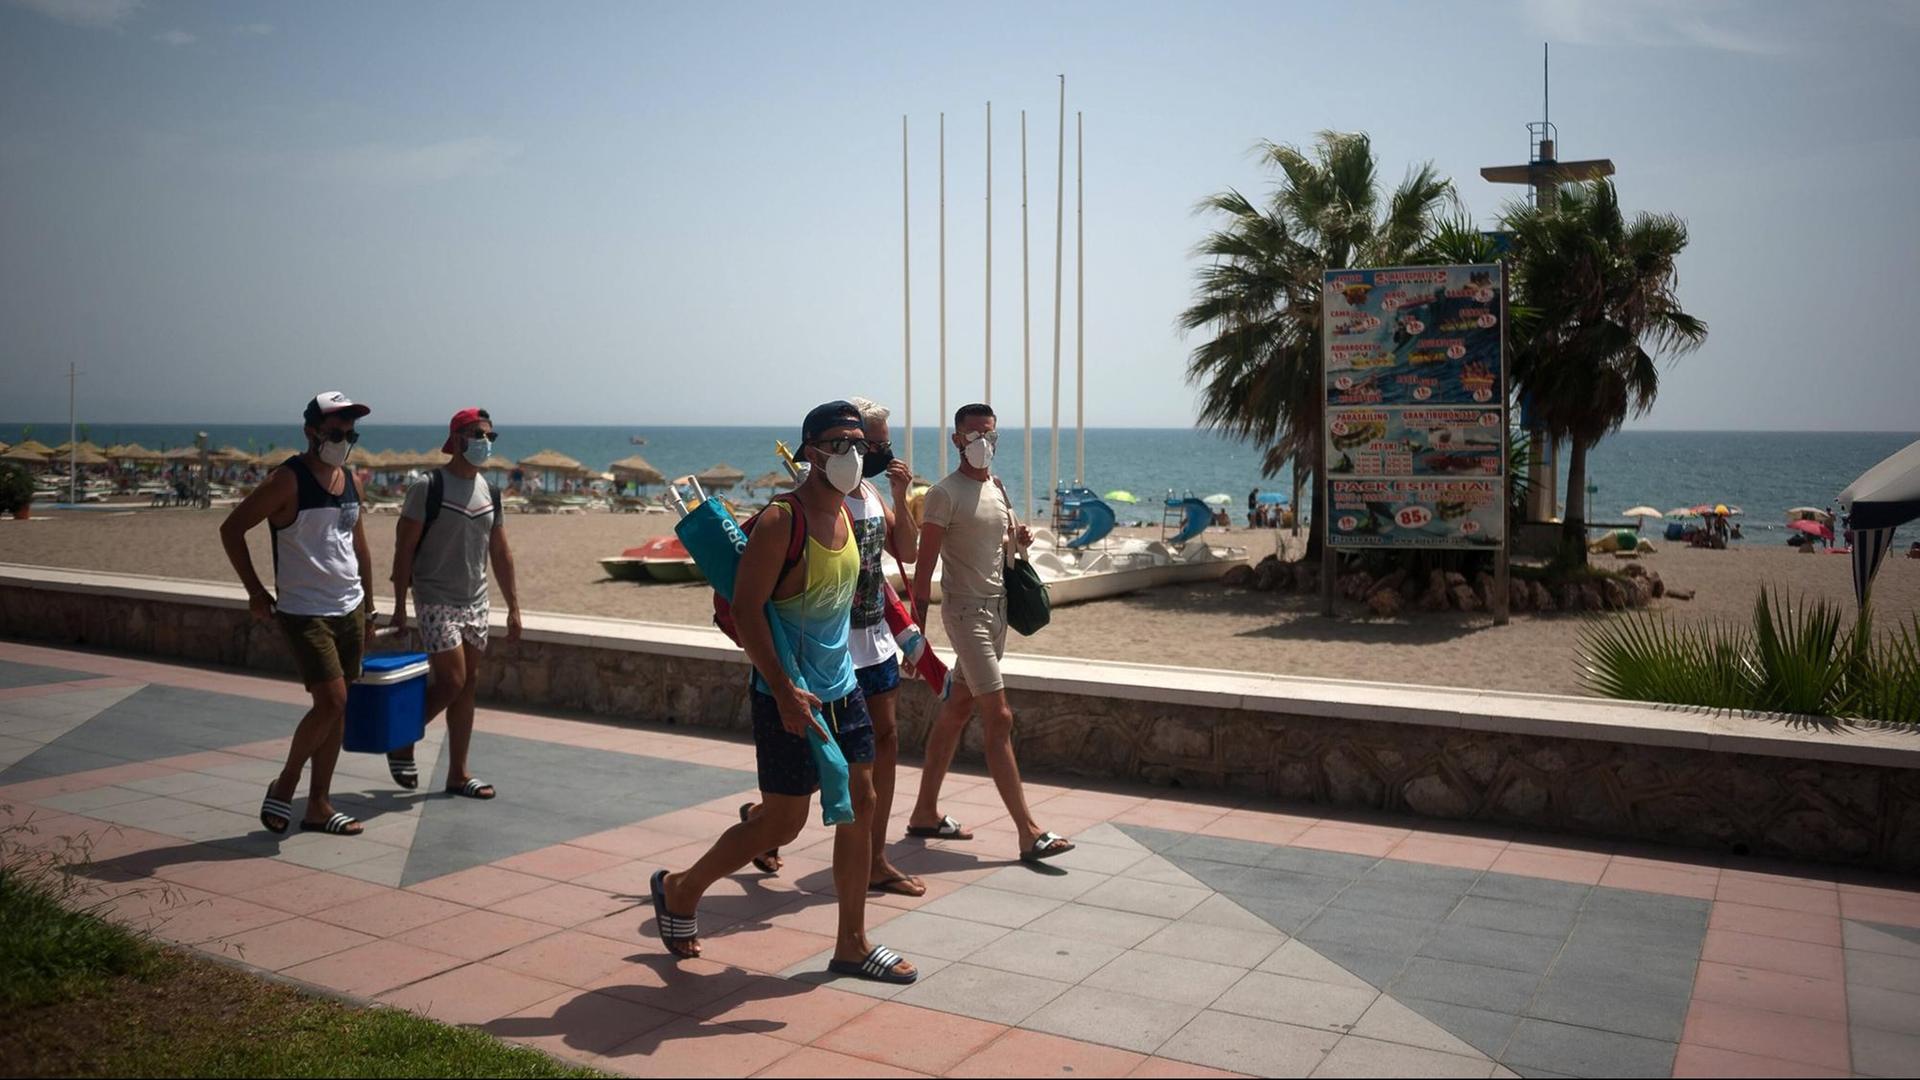 Urlaub in Corona-Zeiten am Strand von Torremolinos in Spanien. Mehrere Menschen laufen mit Mund-Nase-Maske an der Promenade entlang.